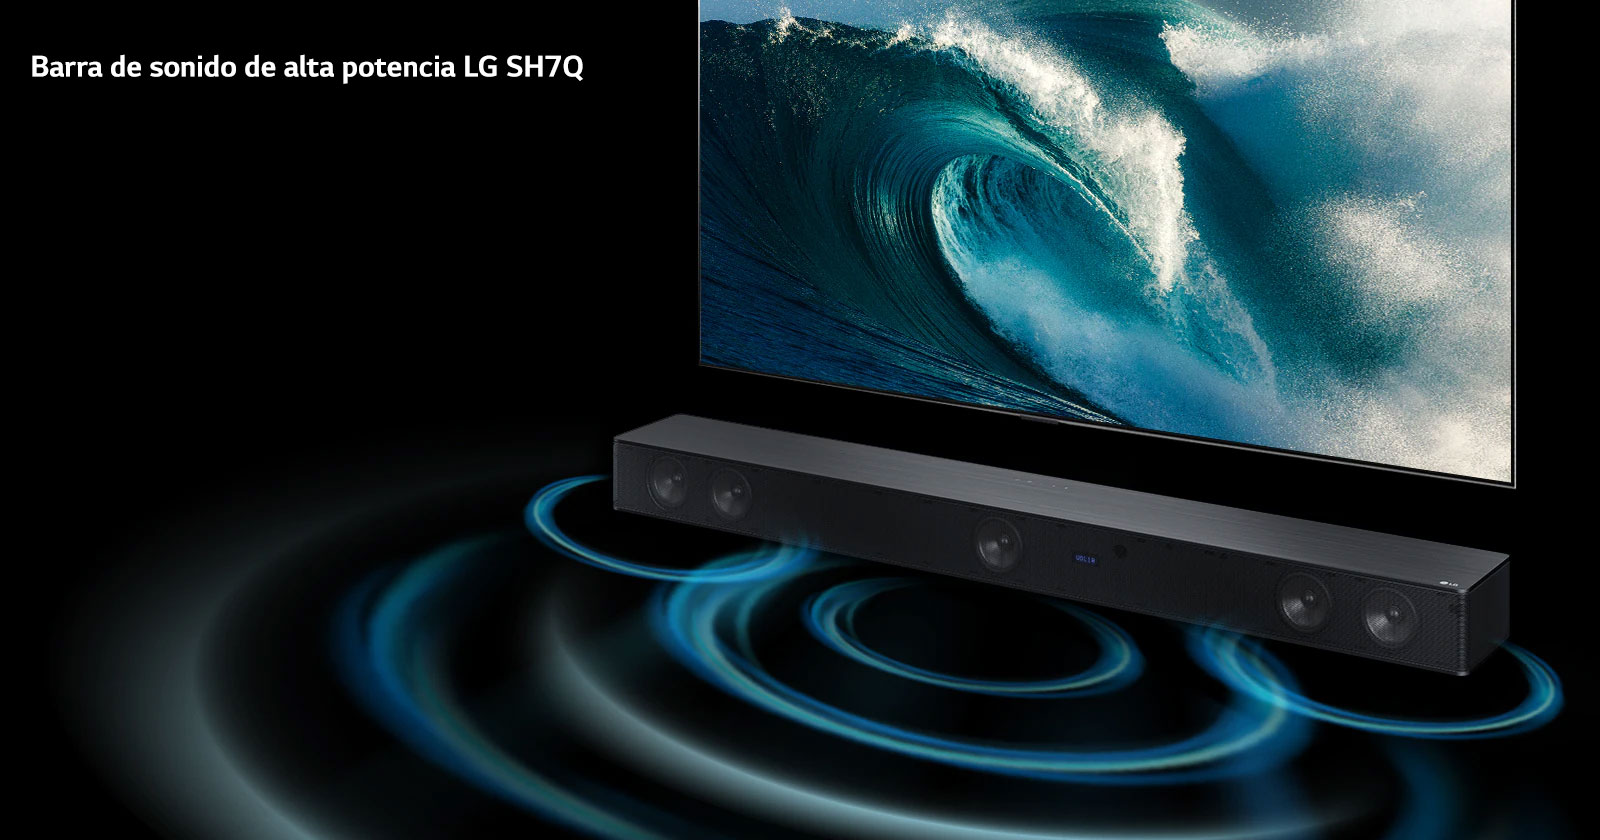 El televisor LG se encuentra en el espacio infinito, mostrando una gran escena de olas. La barra de sonido LG está debajo del televisor. Se ven ondas debajo de la barra de sonido.